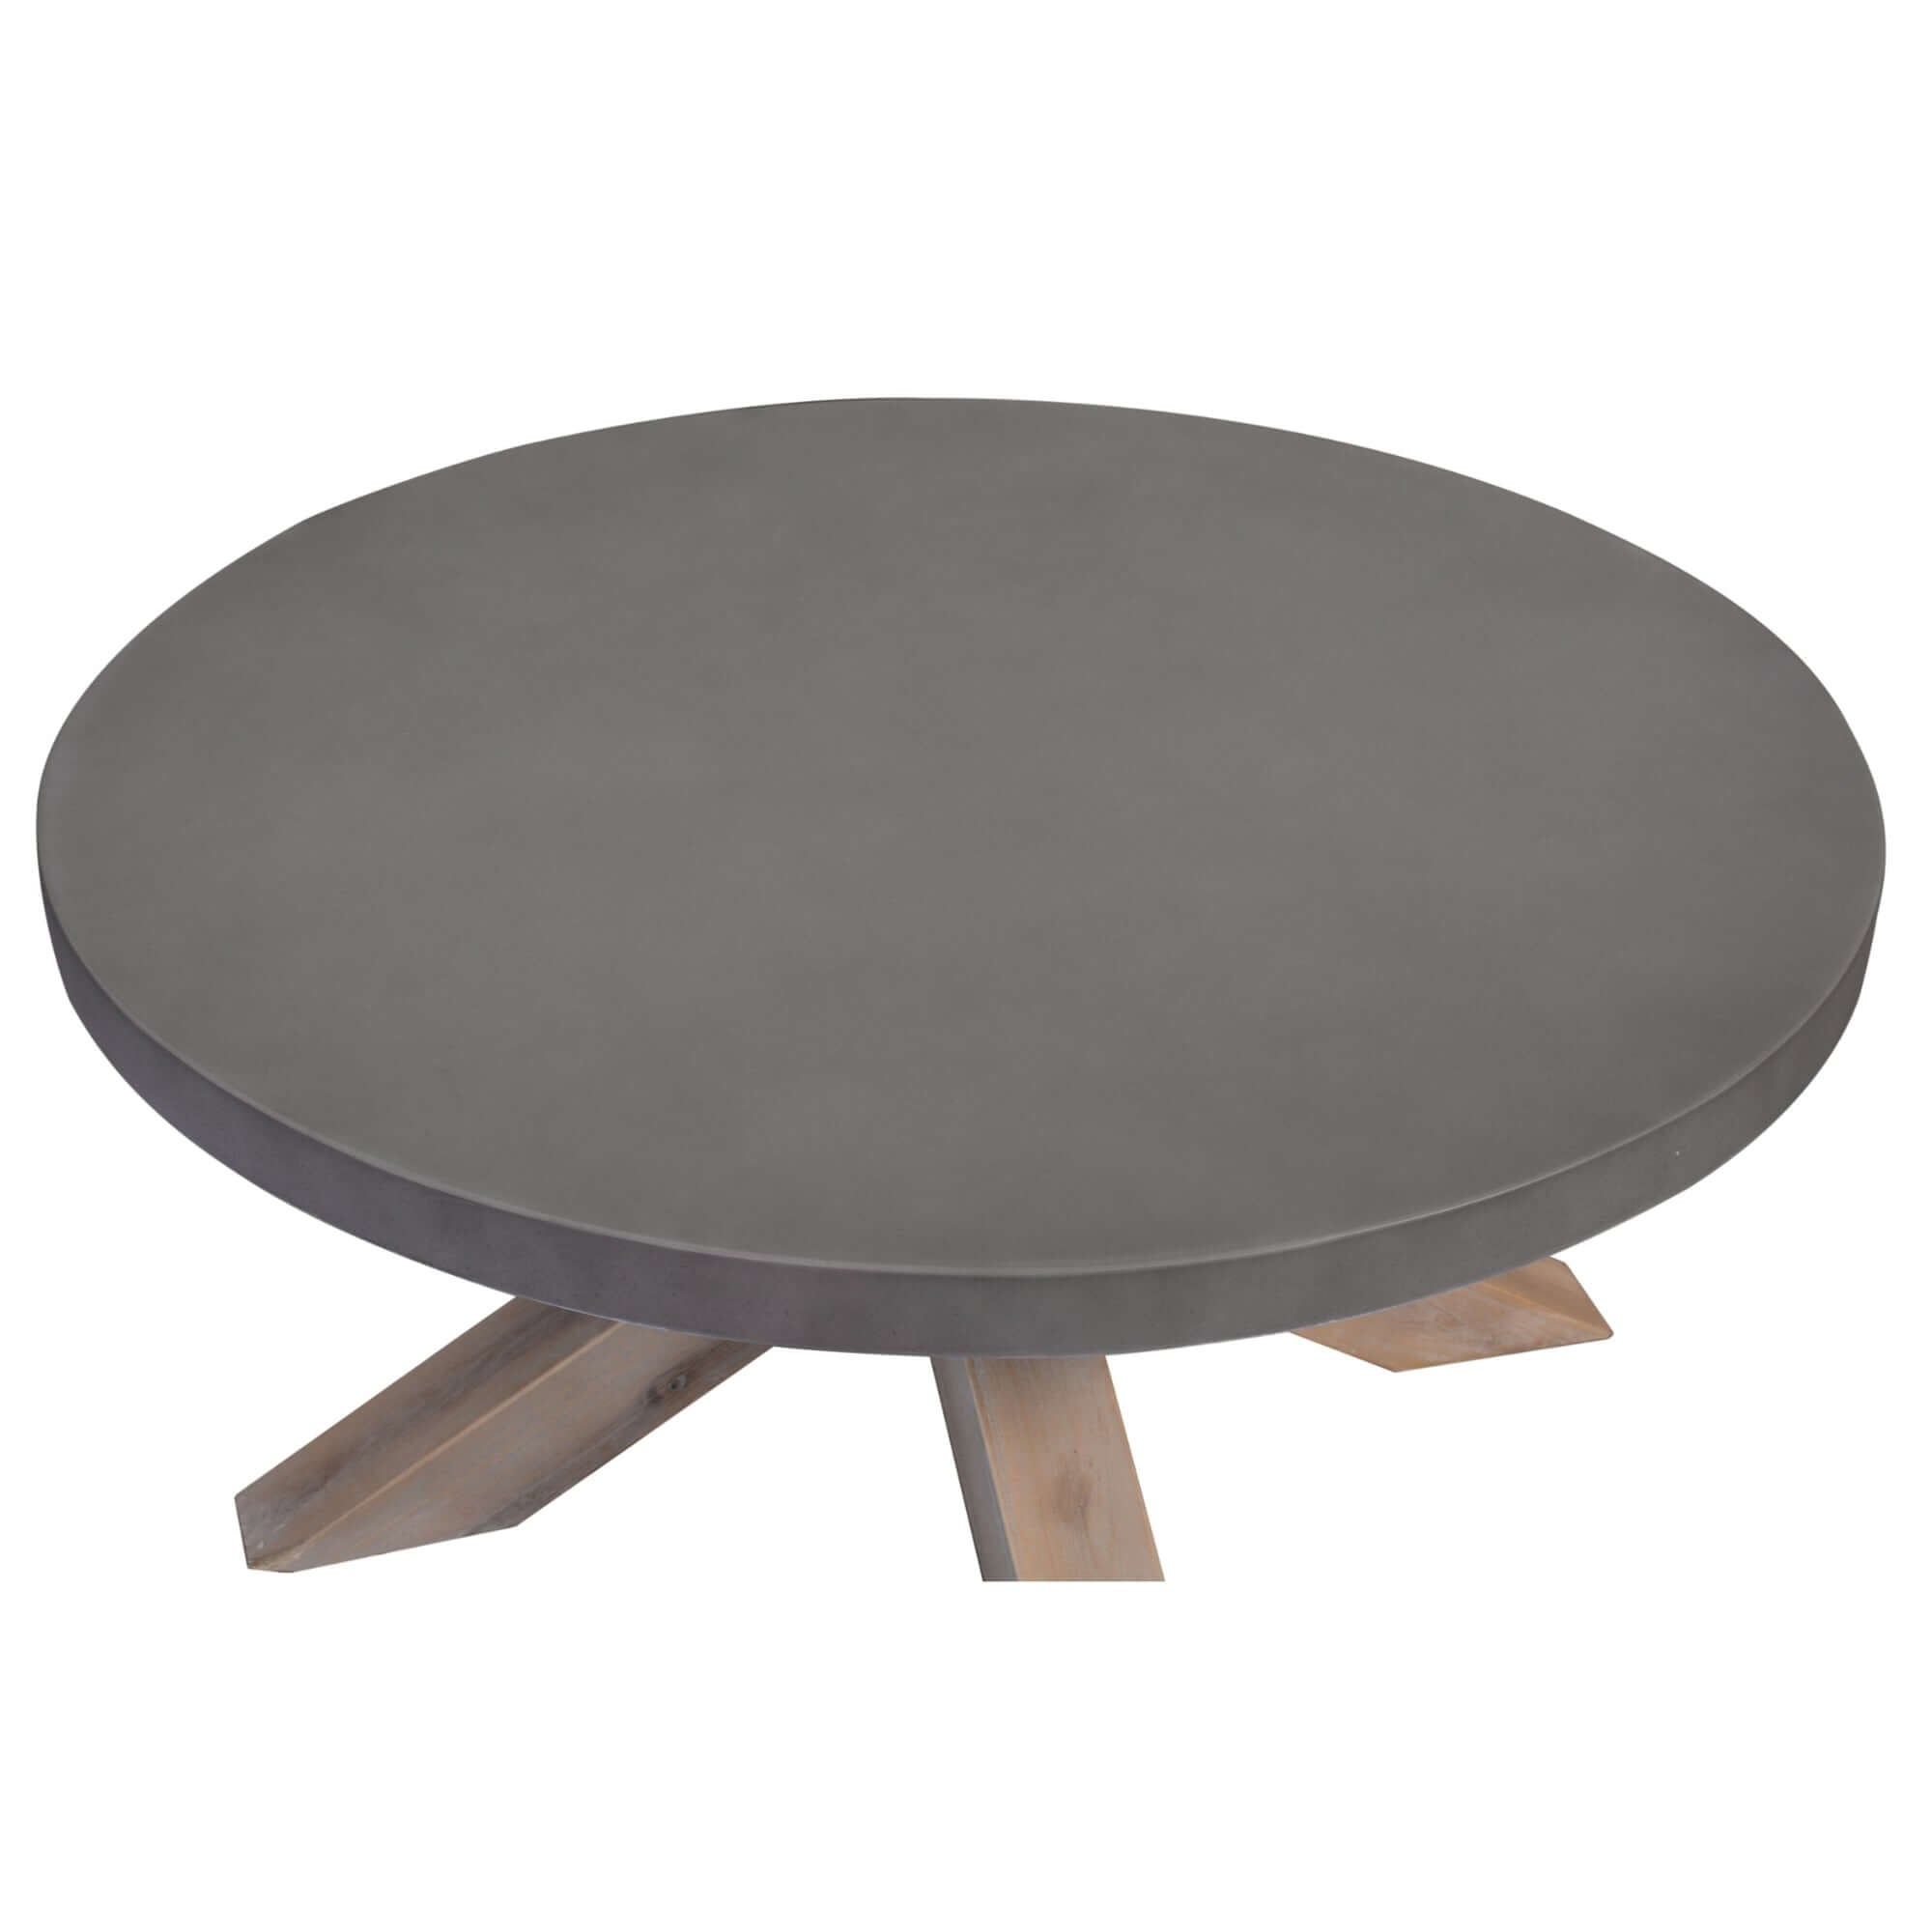 Stony Round Coffee Table - Grey Concrete Top-Upinteriors